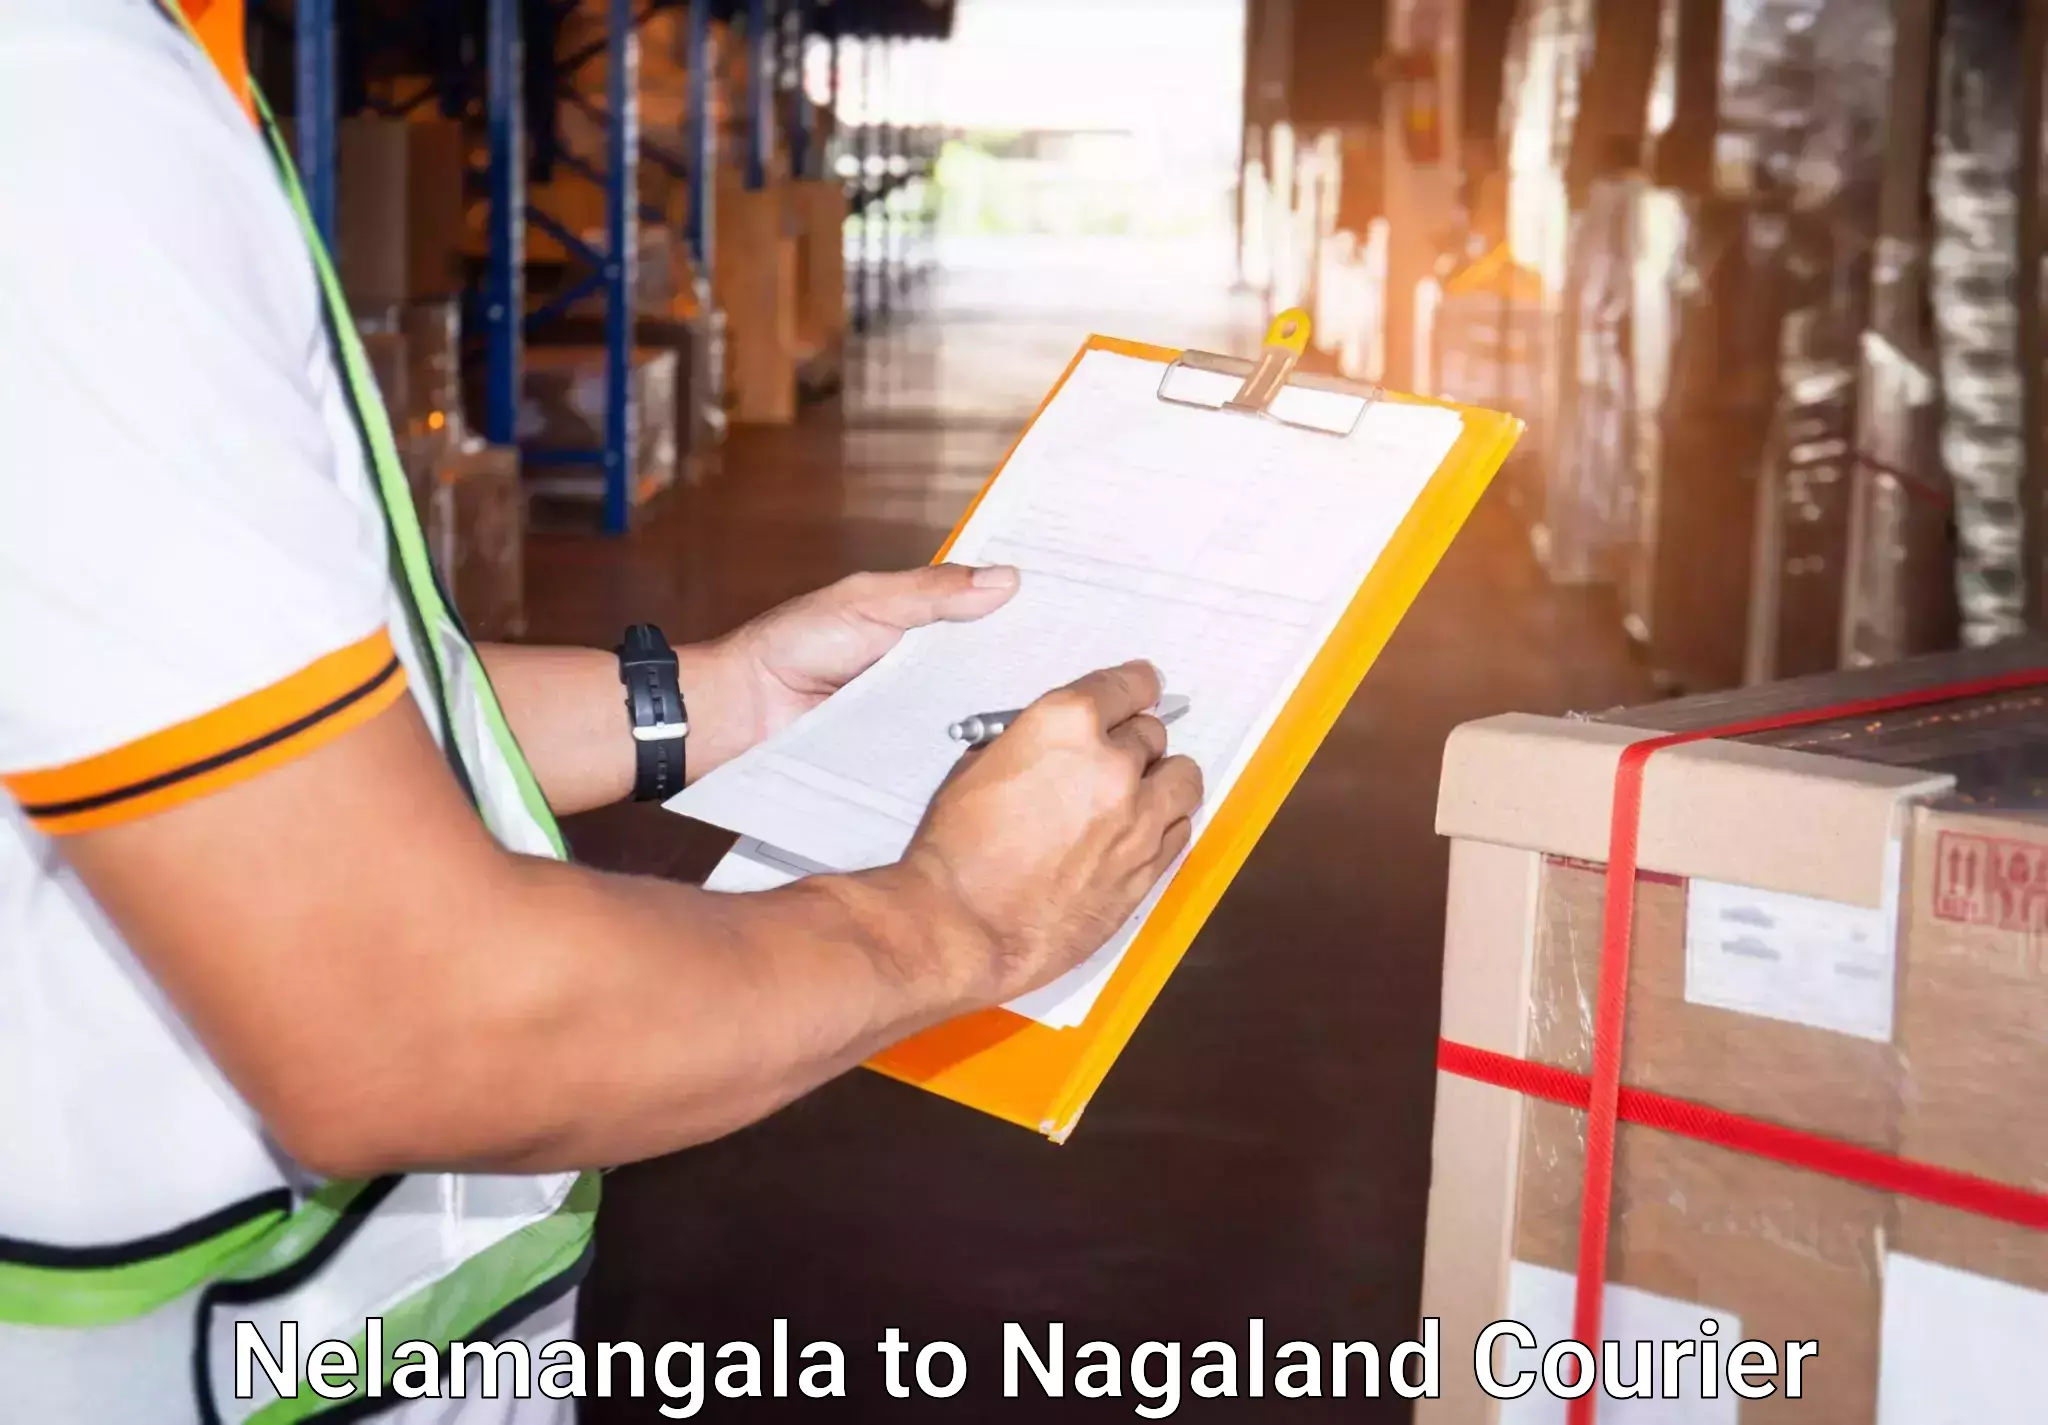 Luggage transport consultancy Nelamangala to NIT Nagaland